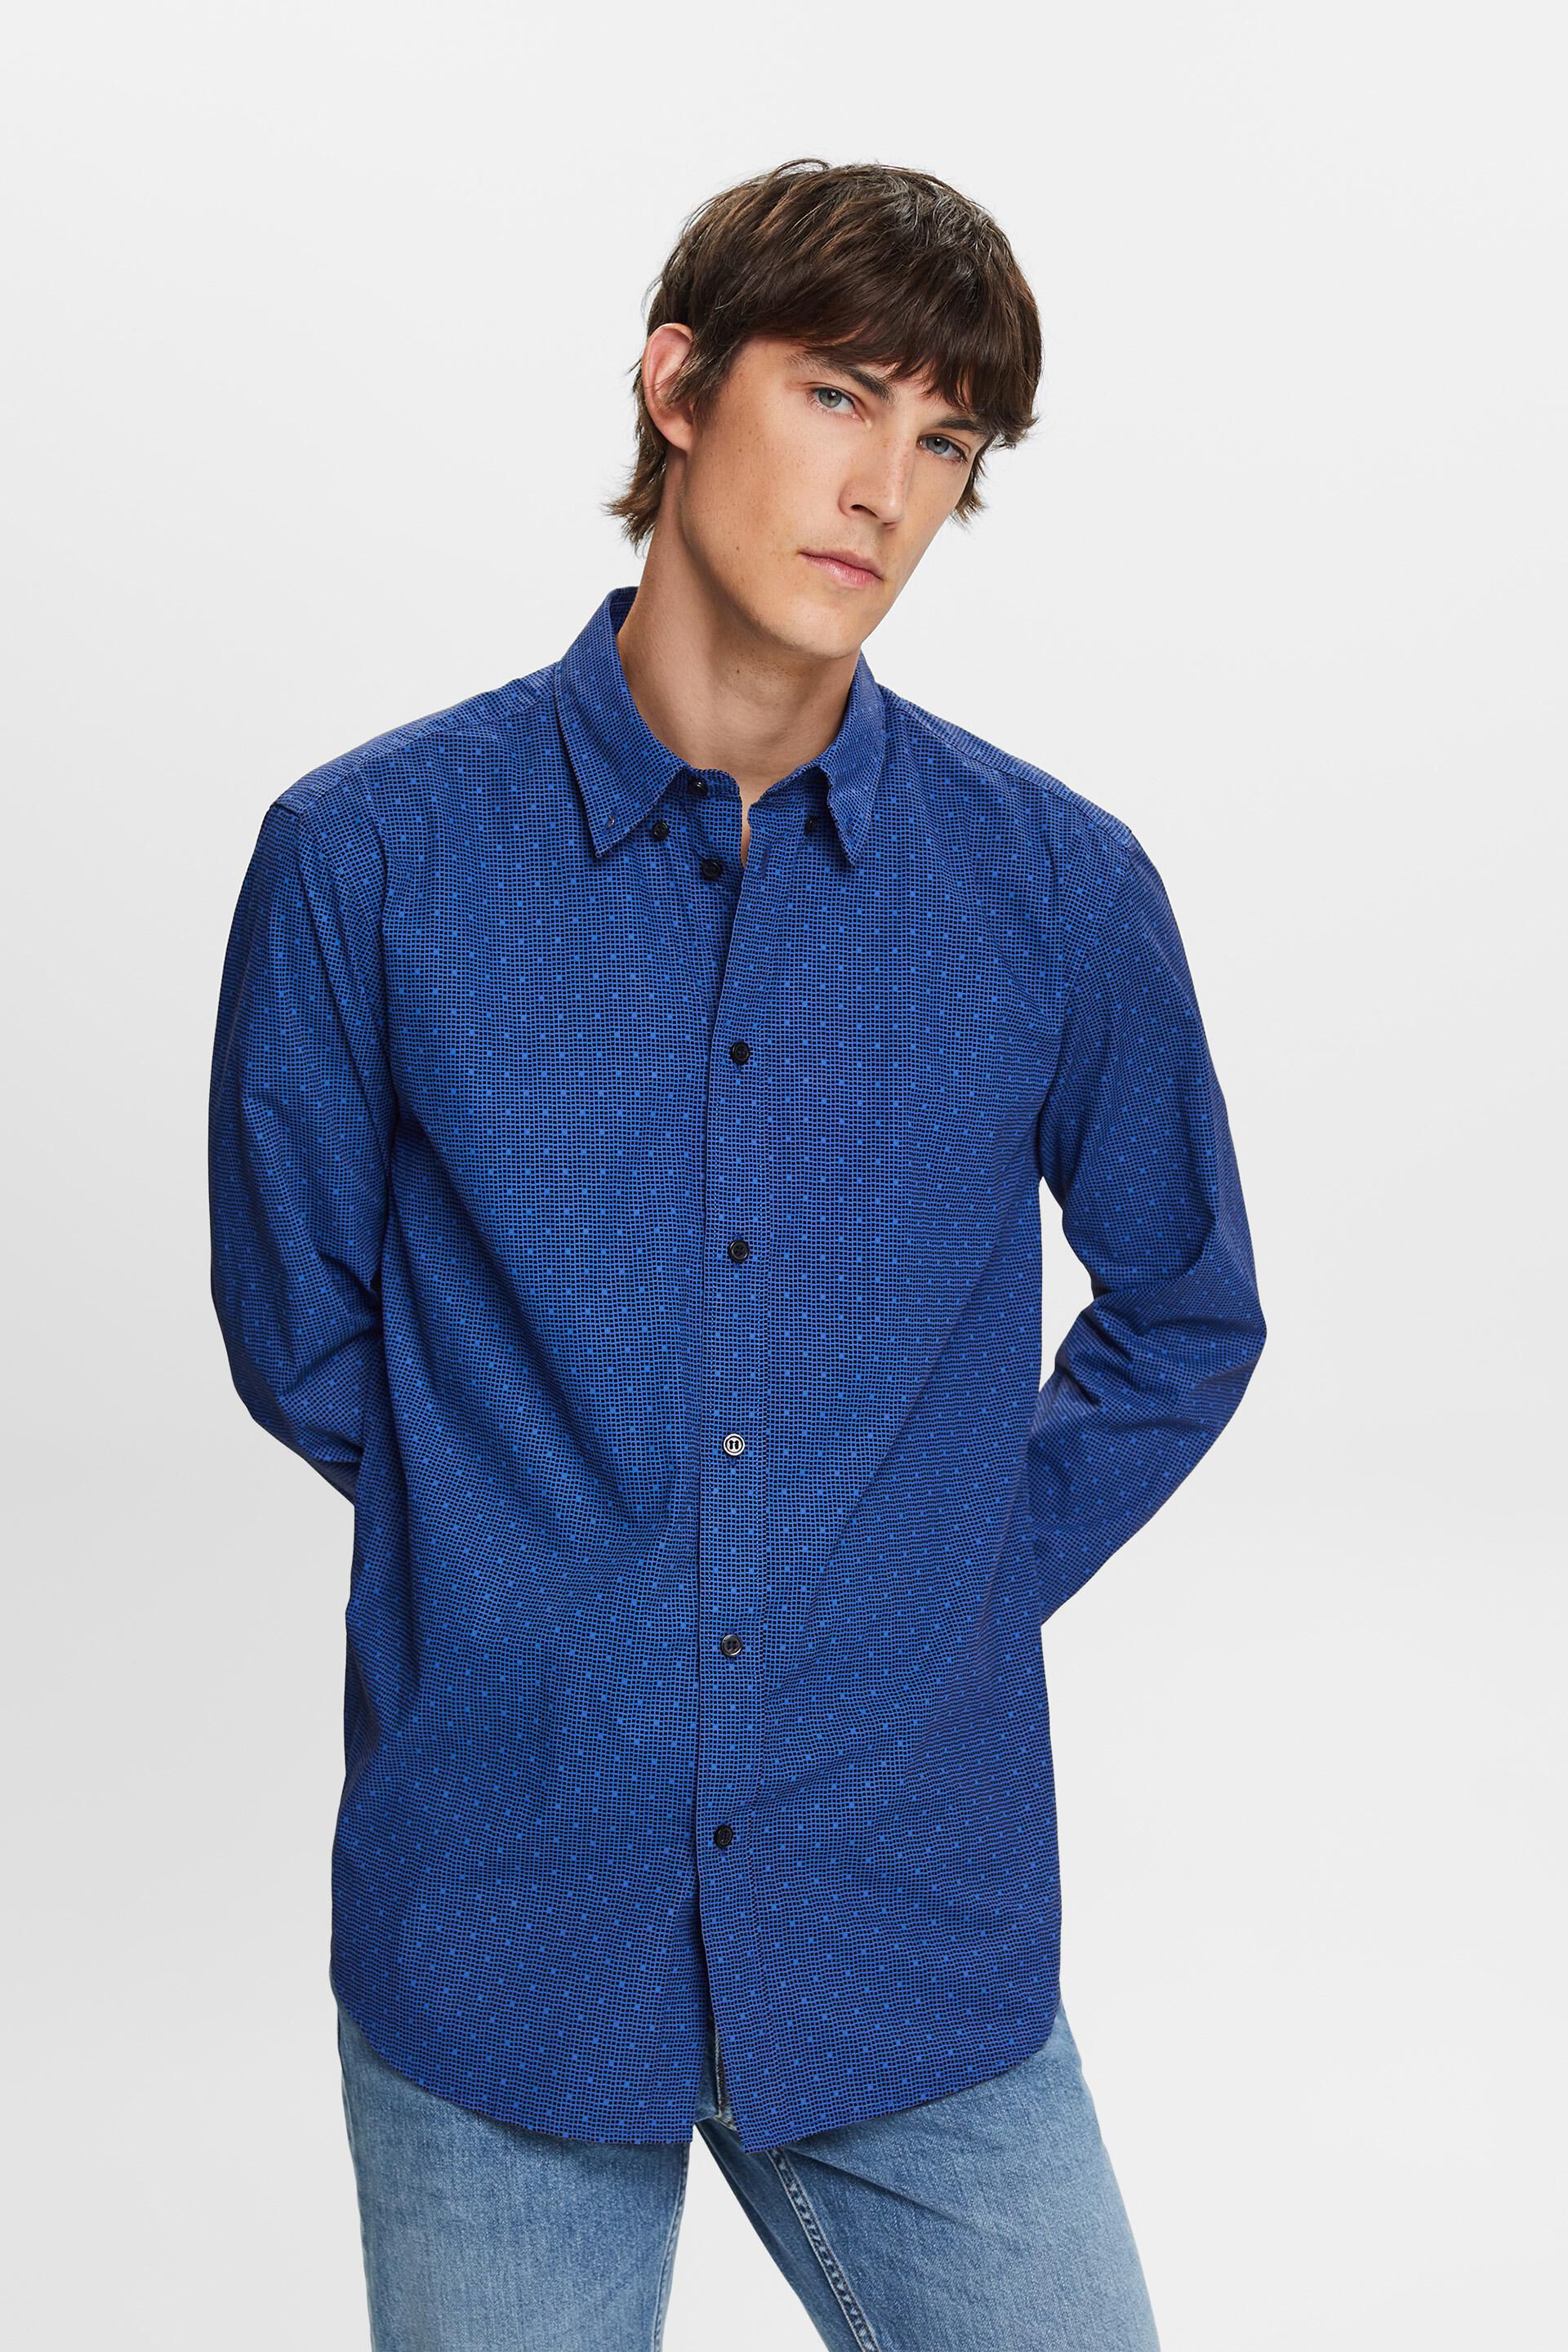 Esprit Patterned button-down 100% cotton shirt,